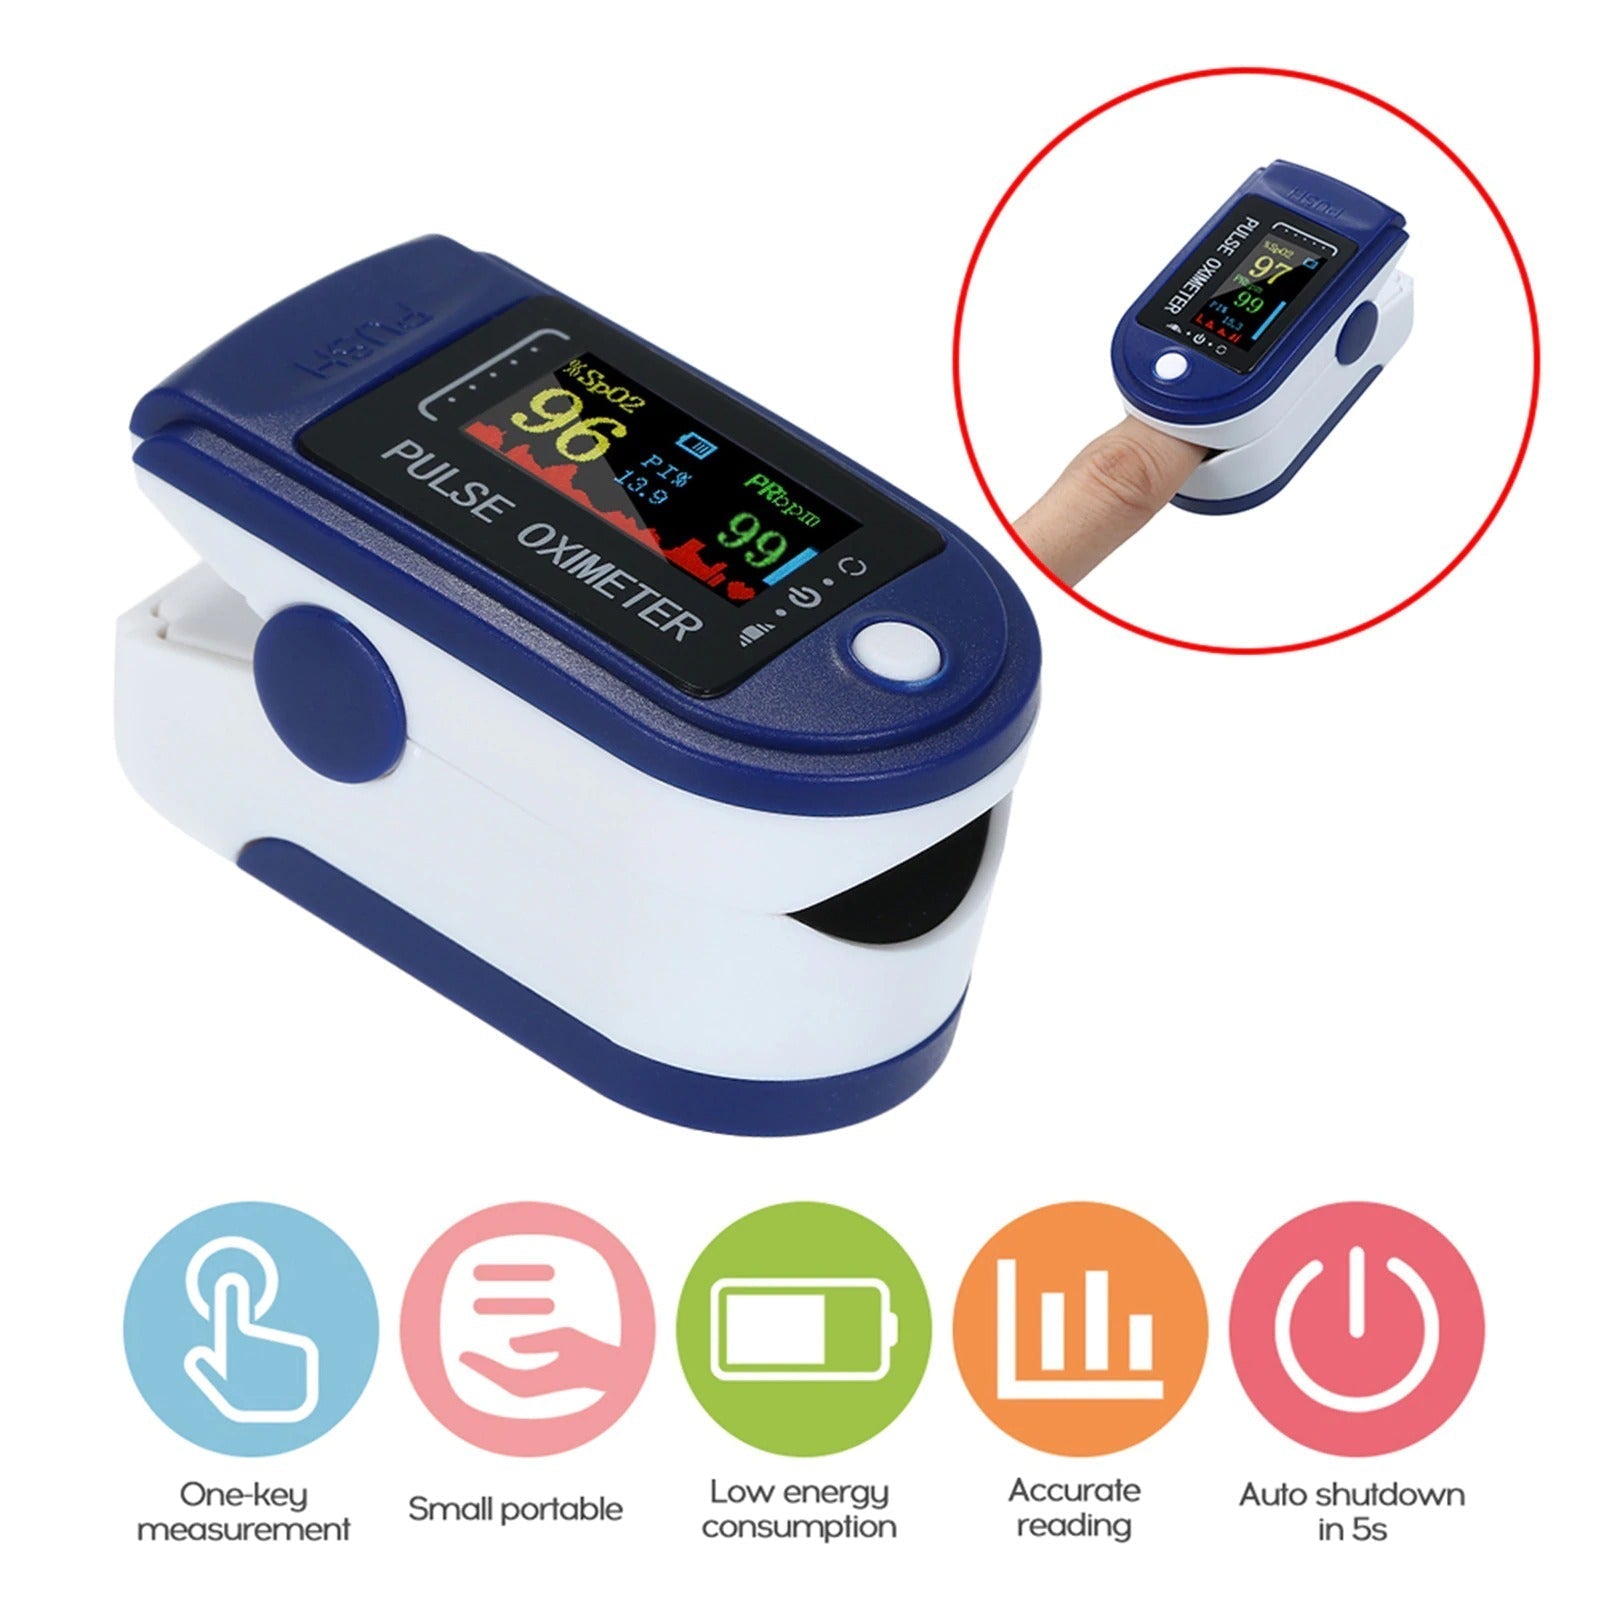 Pulsni OKSIMETAR uređaj koji meri količinu kiseonika u krvi i puls - Brzishop